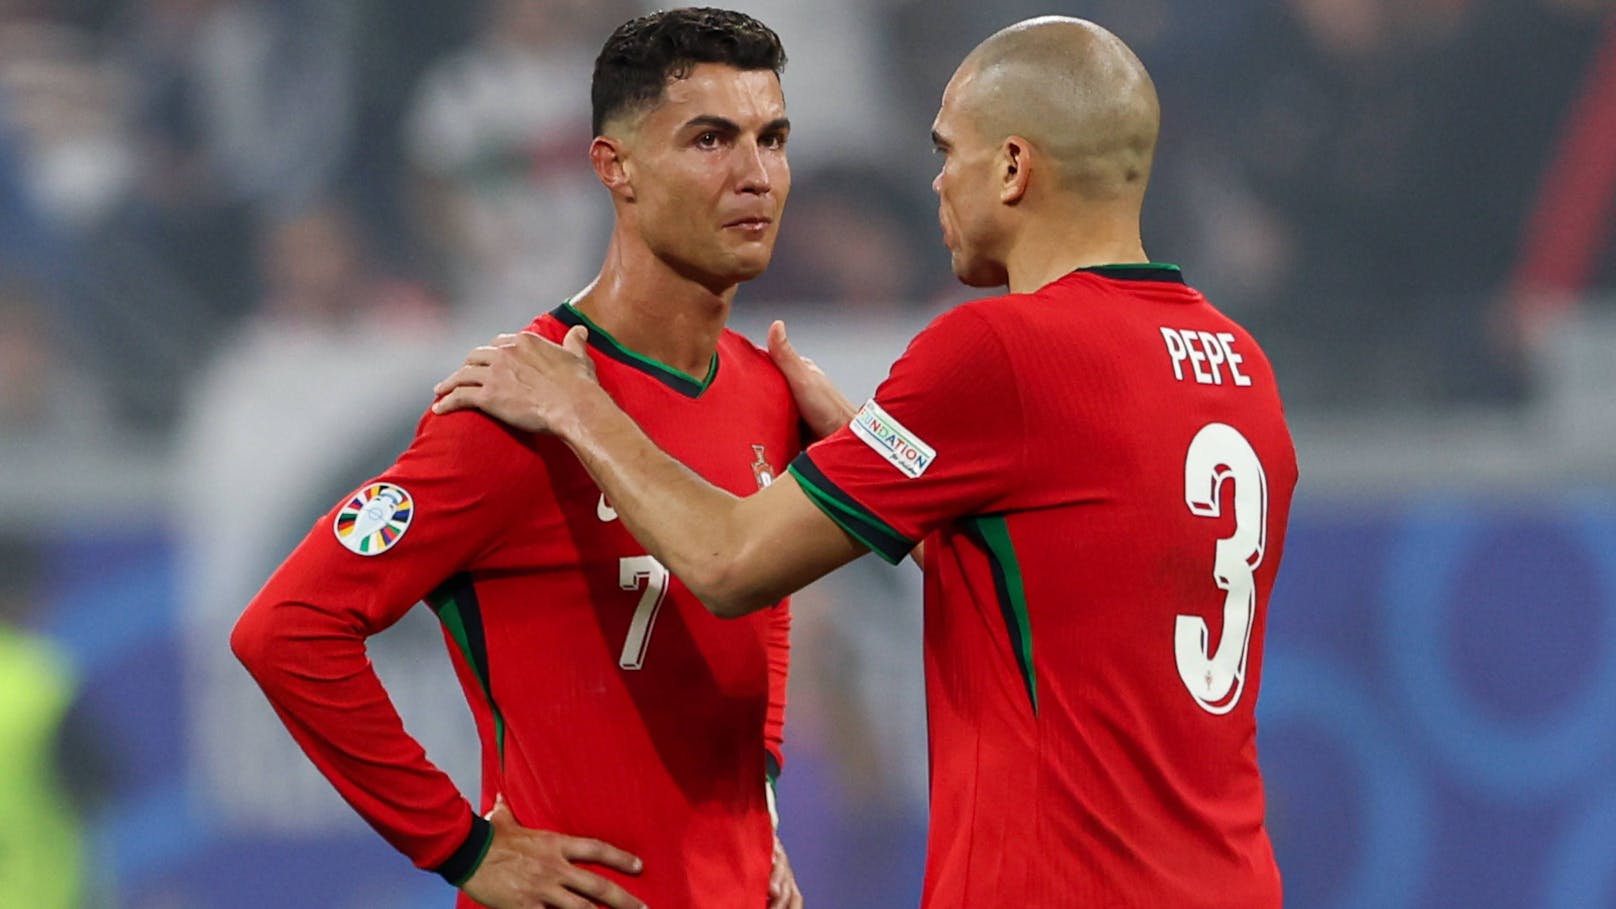 Der wirkliche Grund für die Ronaldo-Tränen nach Elfer